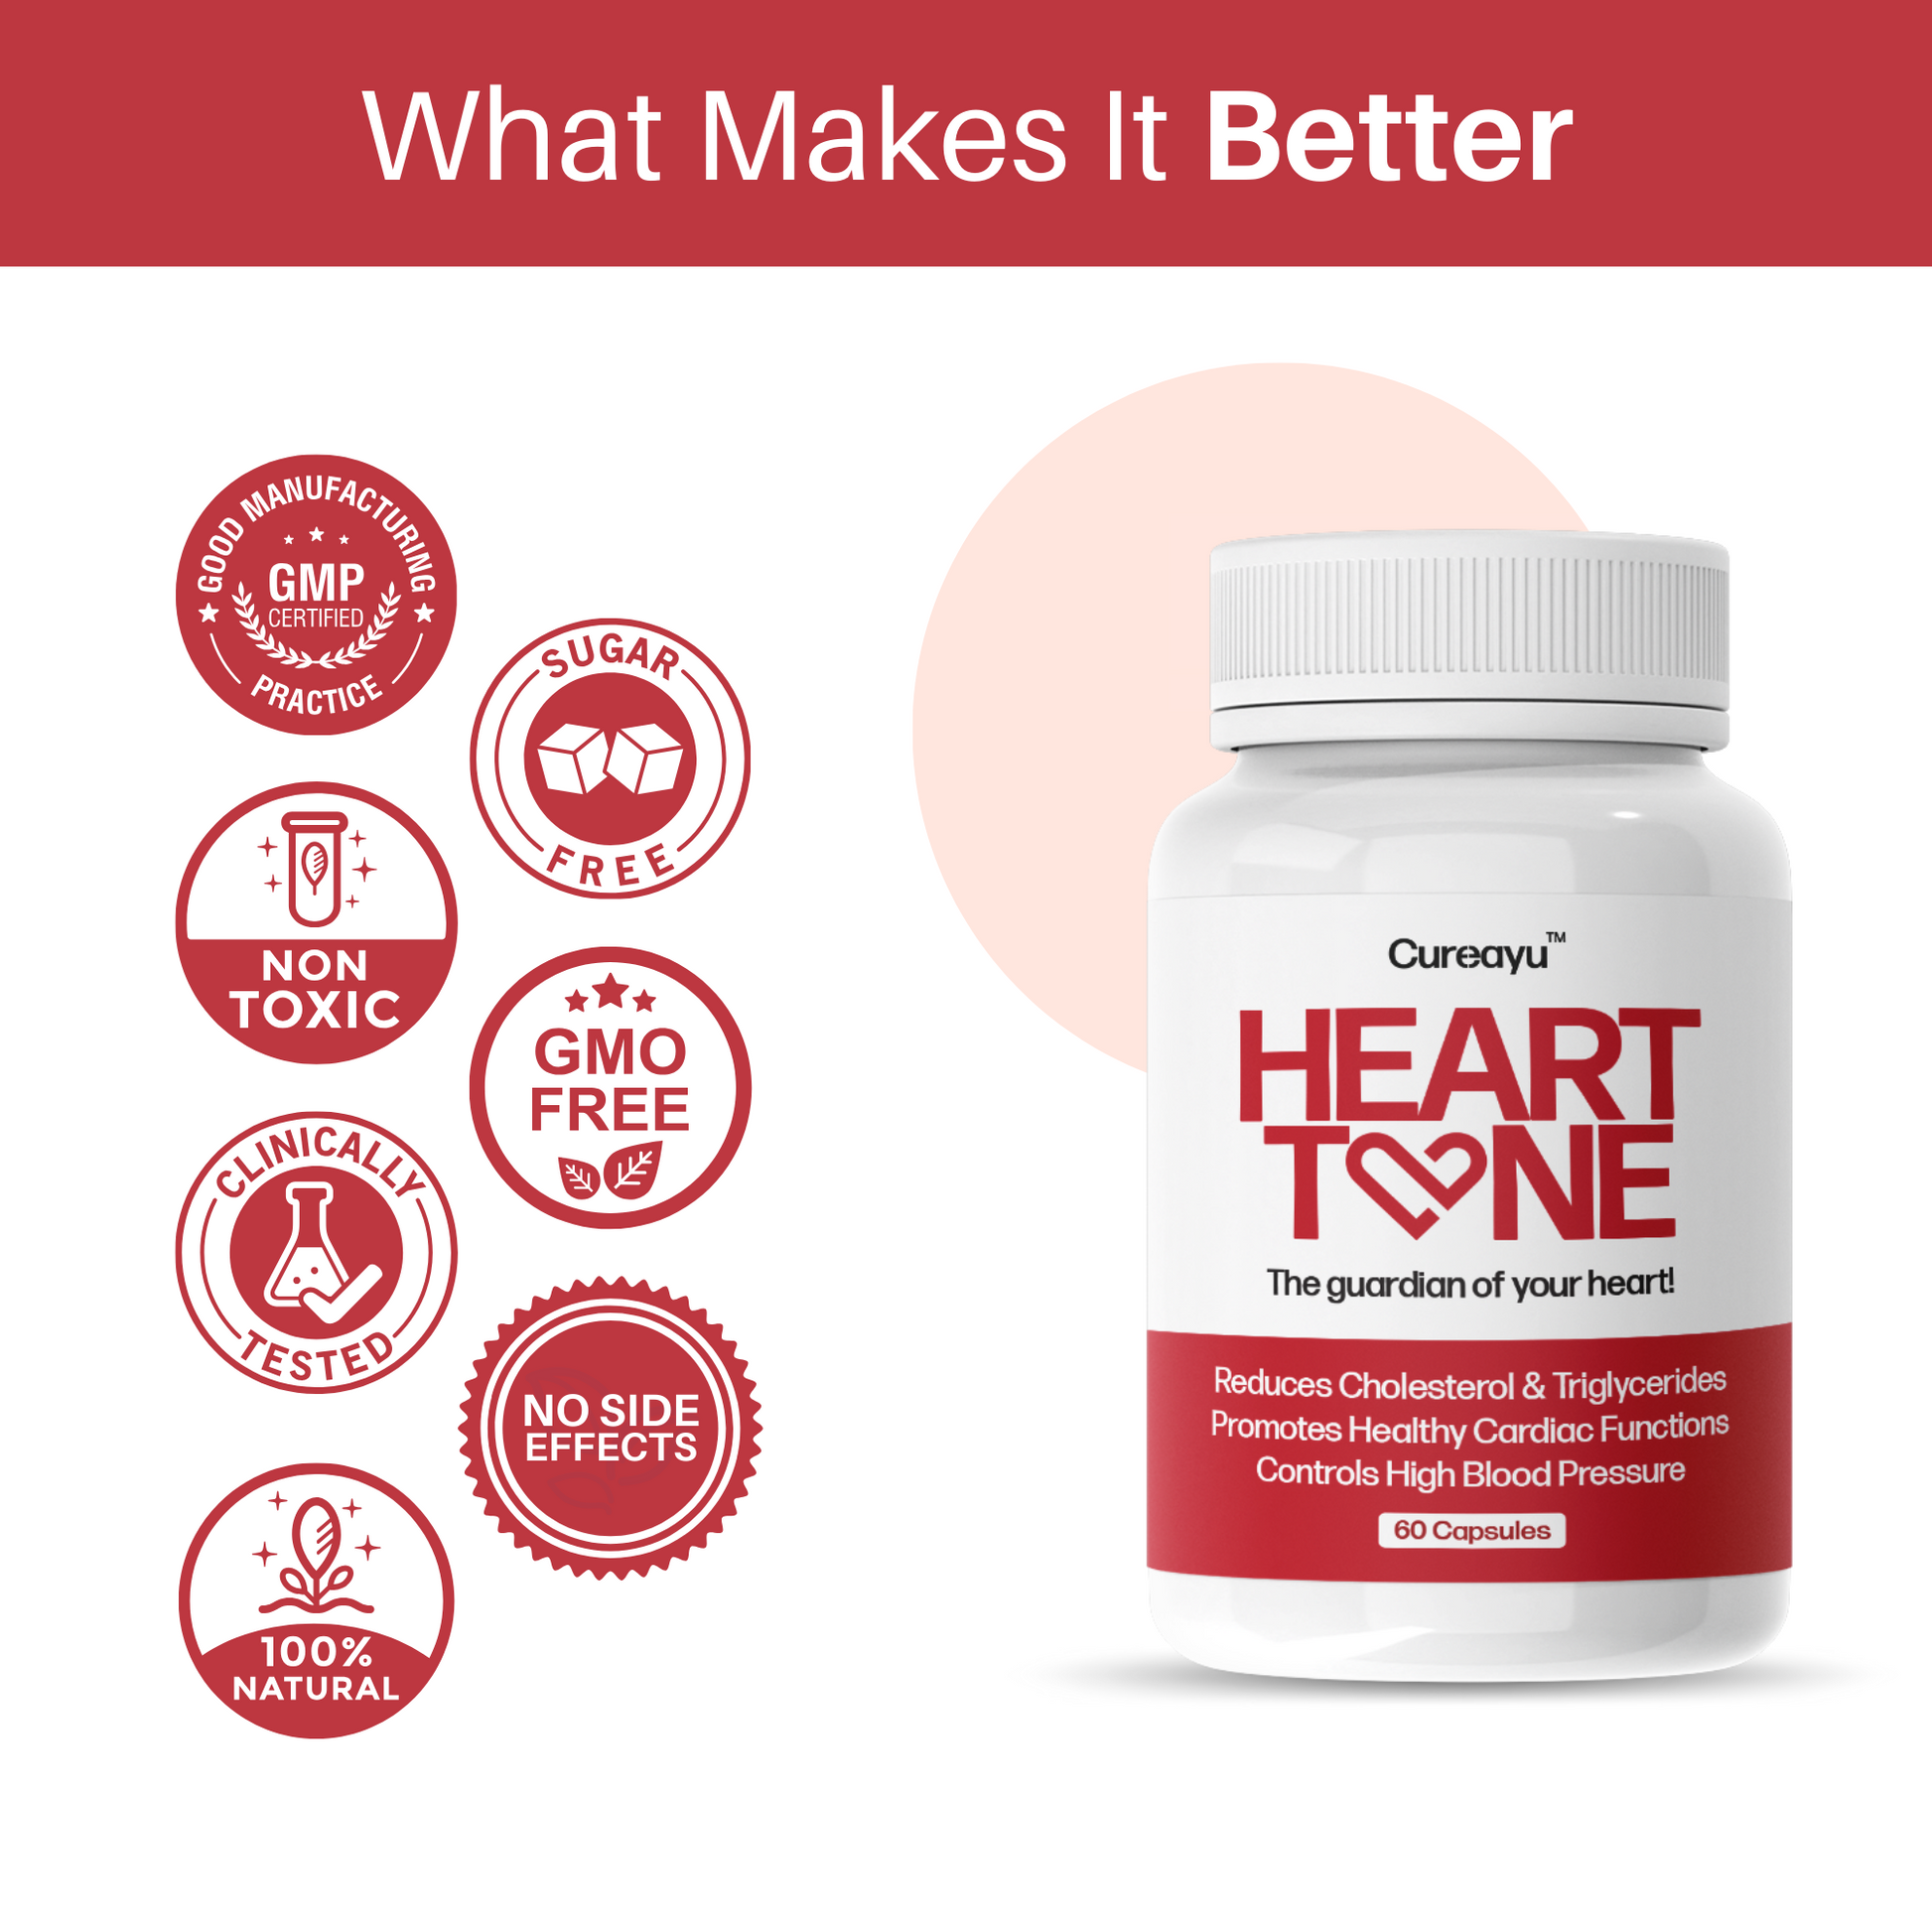 benefit of healthy heart